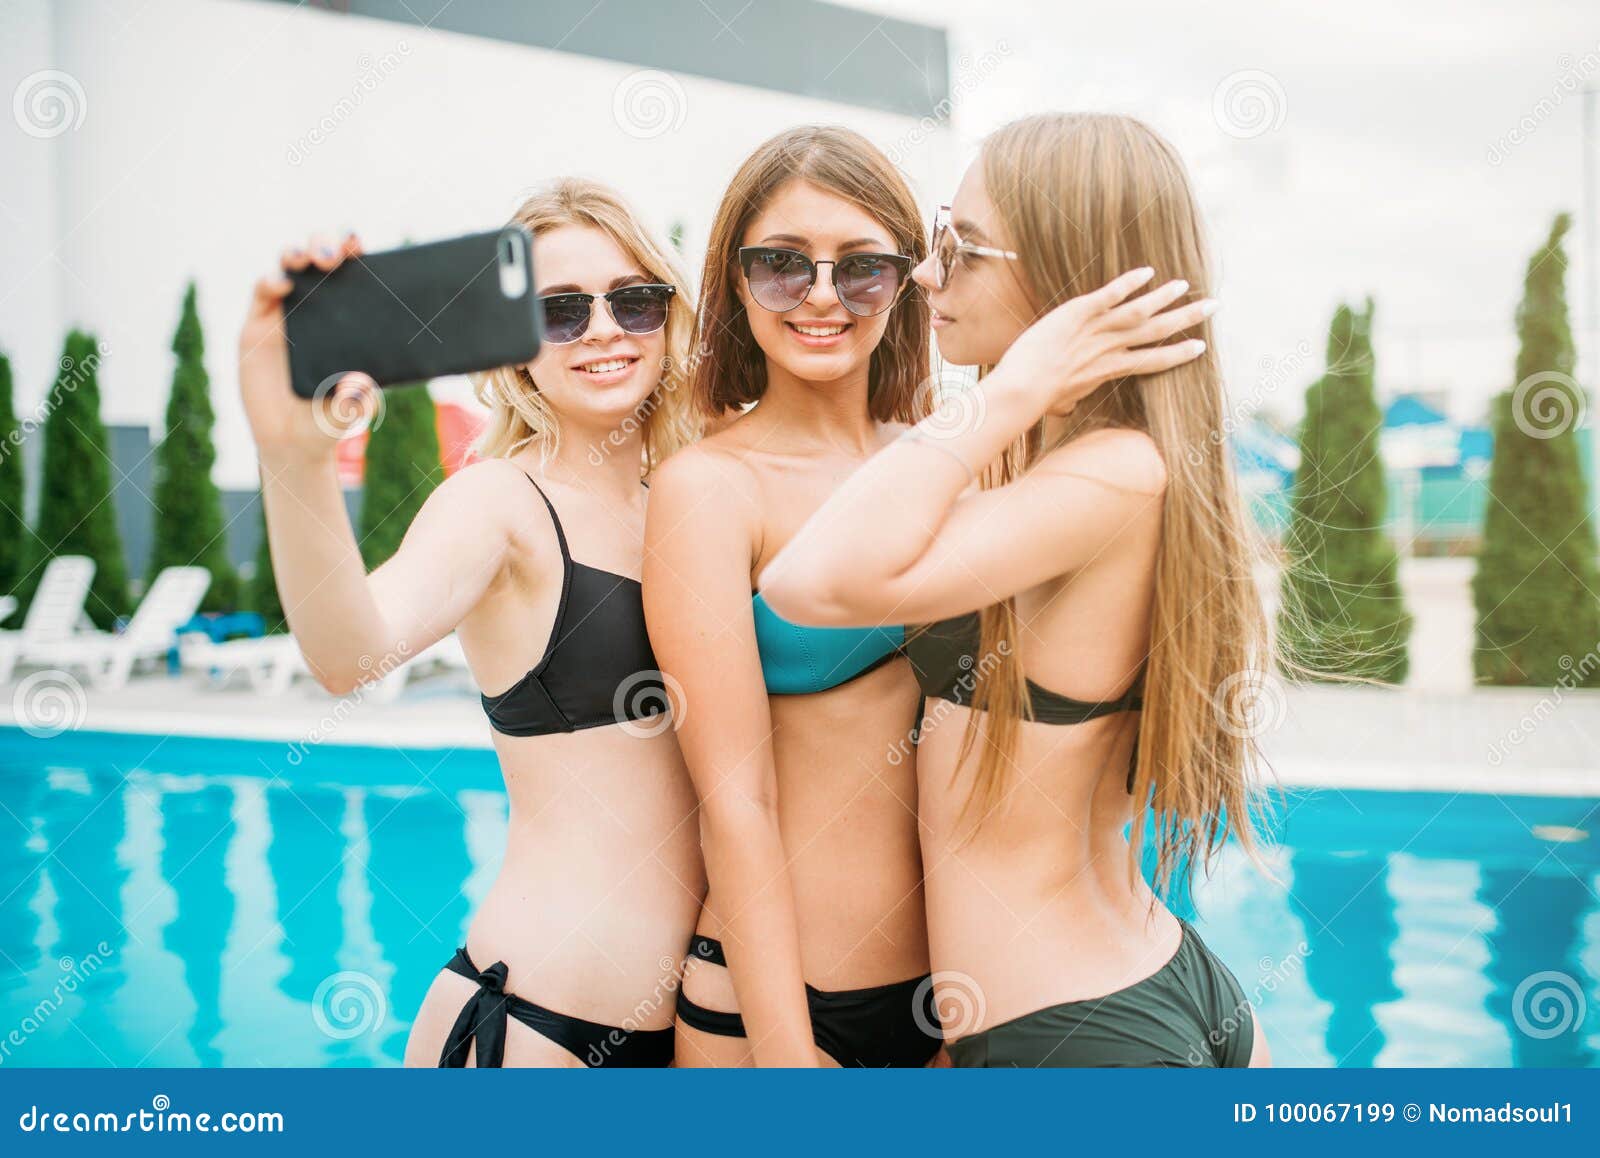 Девушки в купальниках на пляже (89 ФОТО)